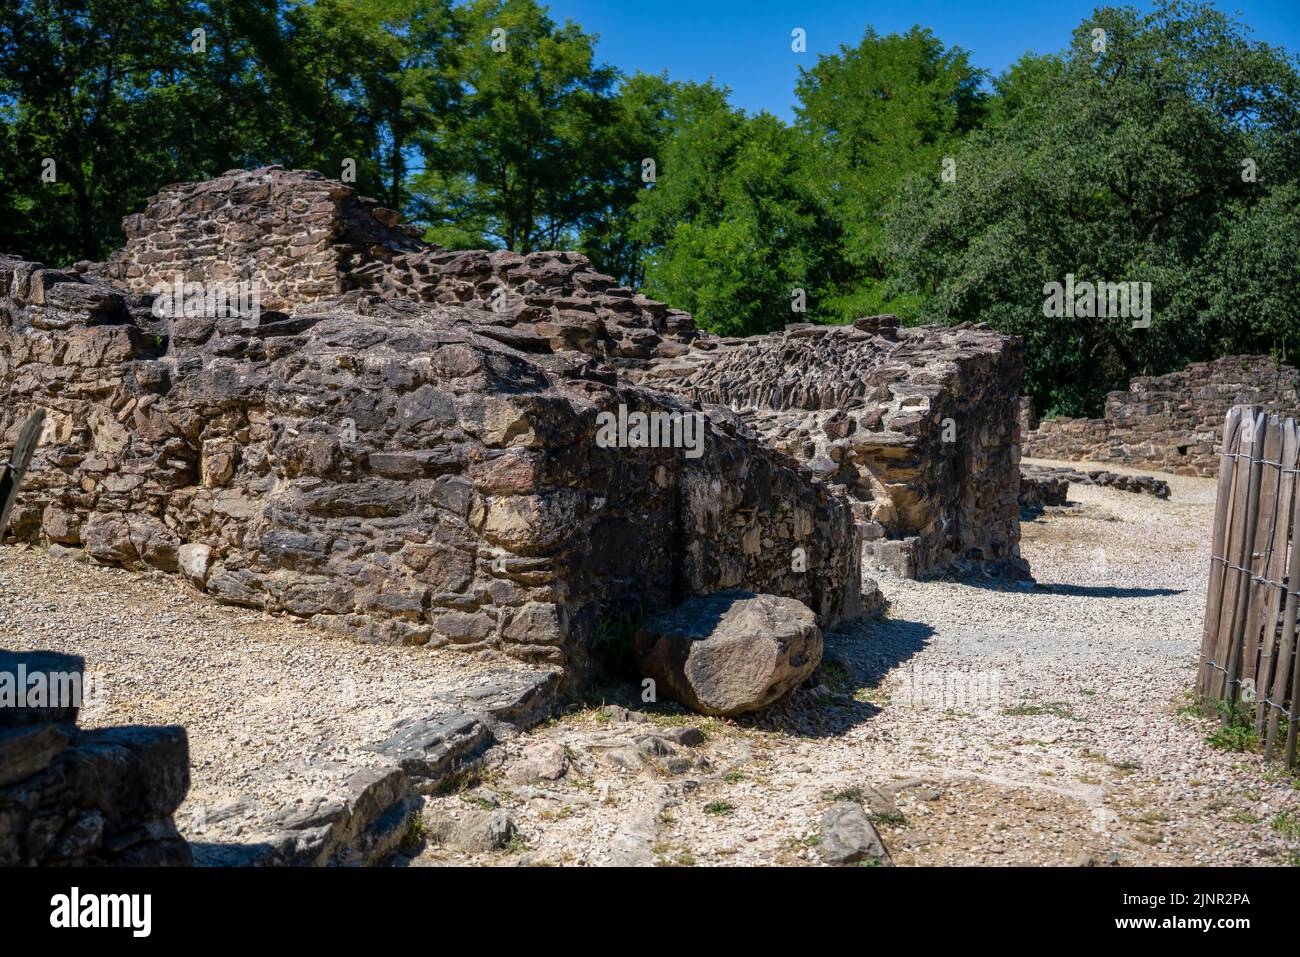 stone-built buildings and structures in a Roman village, Le Bas Castrum, Chalucet Castle, near Limoges France Stock Photo